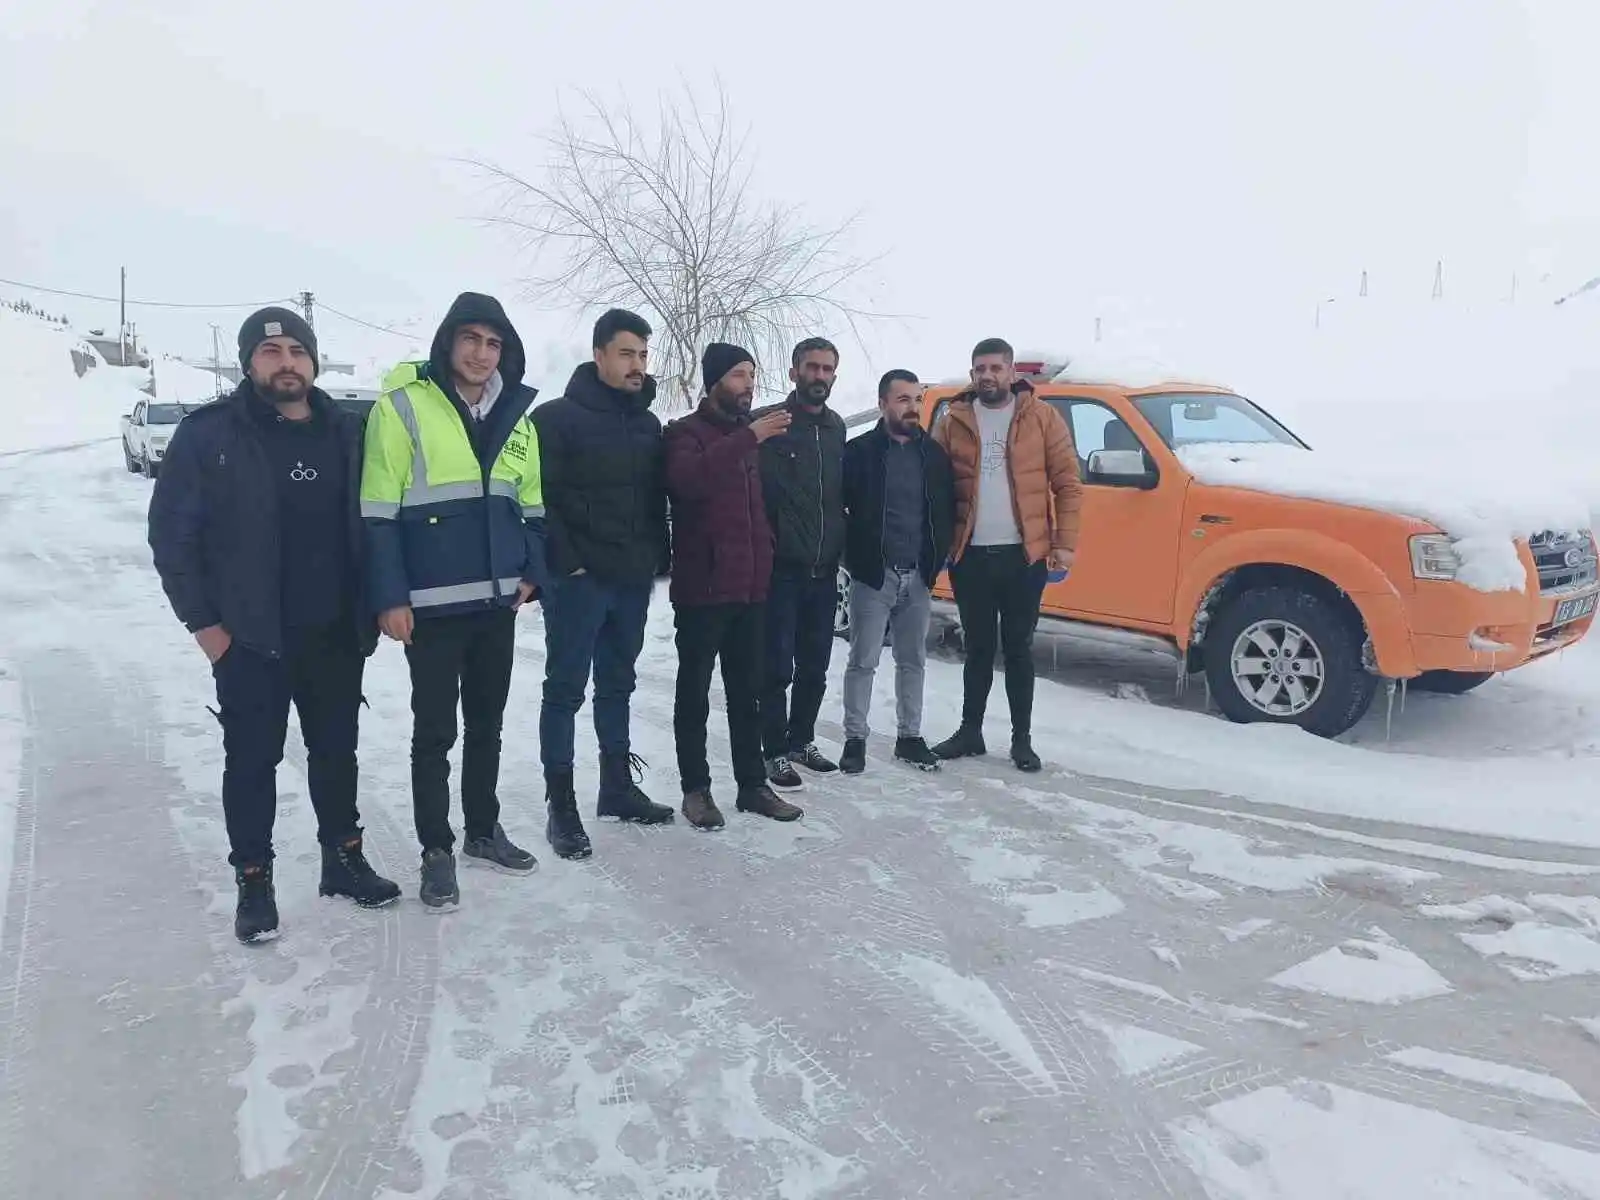 Bitlisli gönüllü kepçe operatörleri deprem bölgesinde çalışmak için yola çıktı
